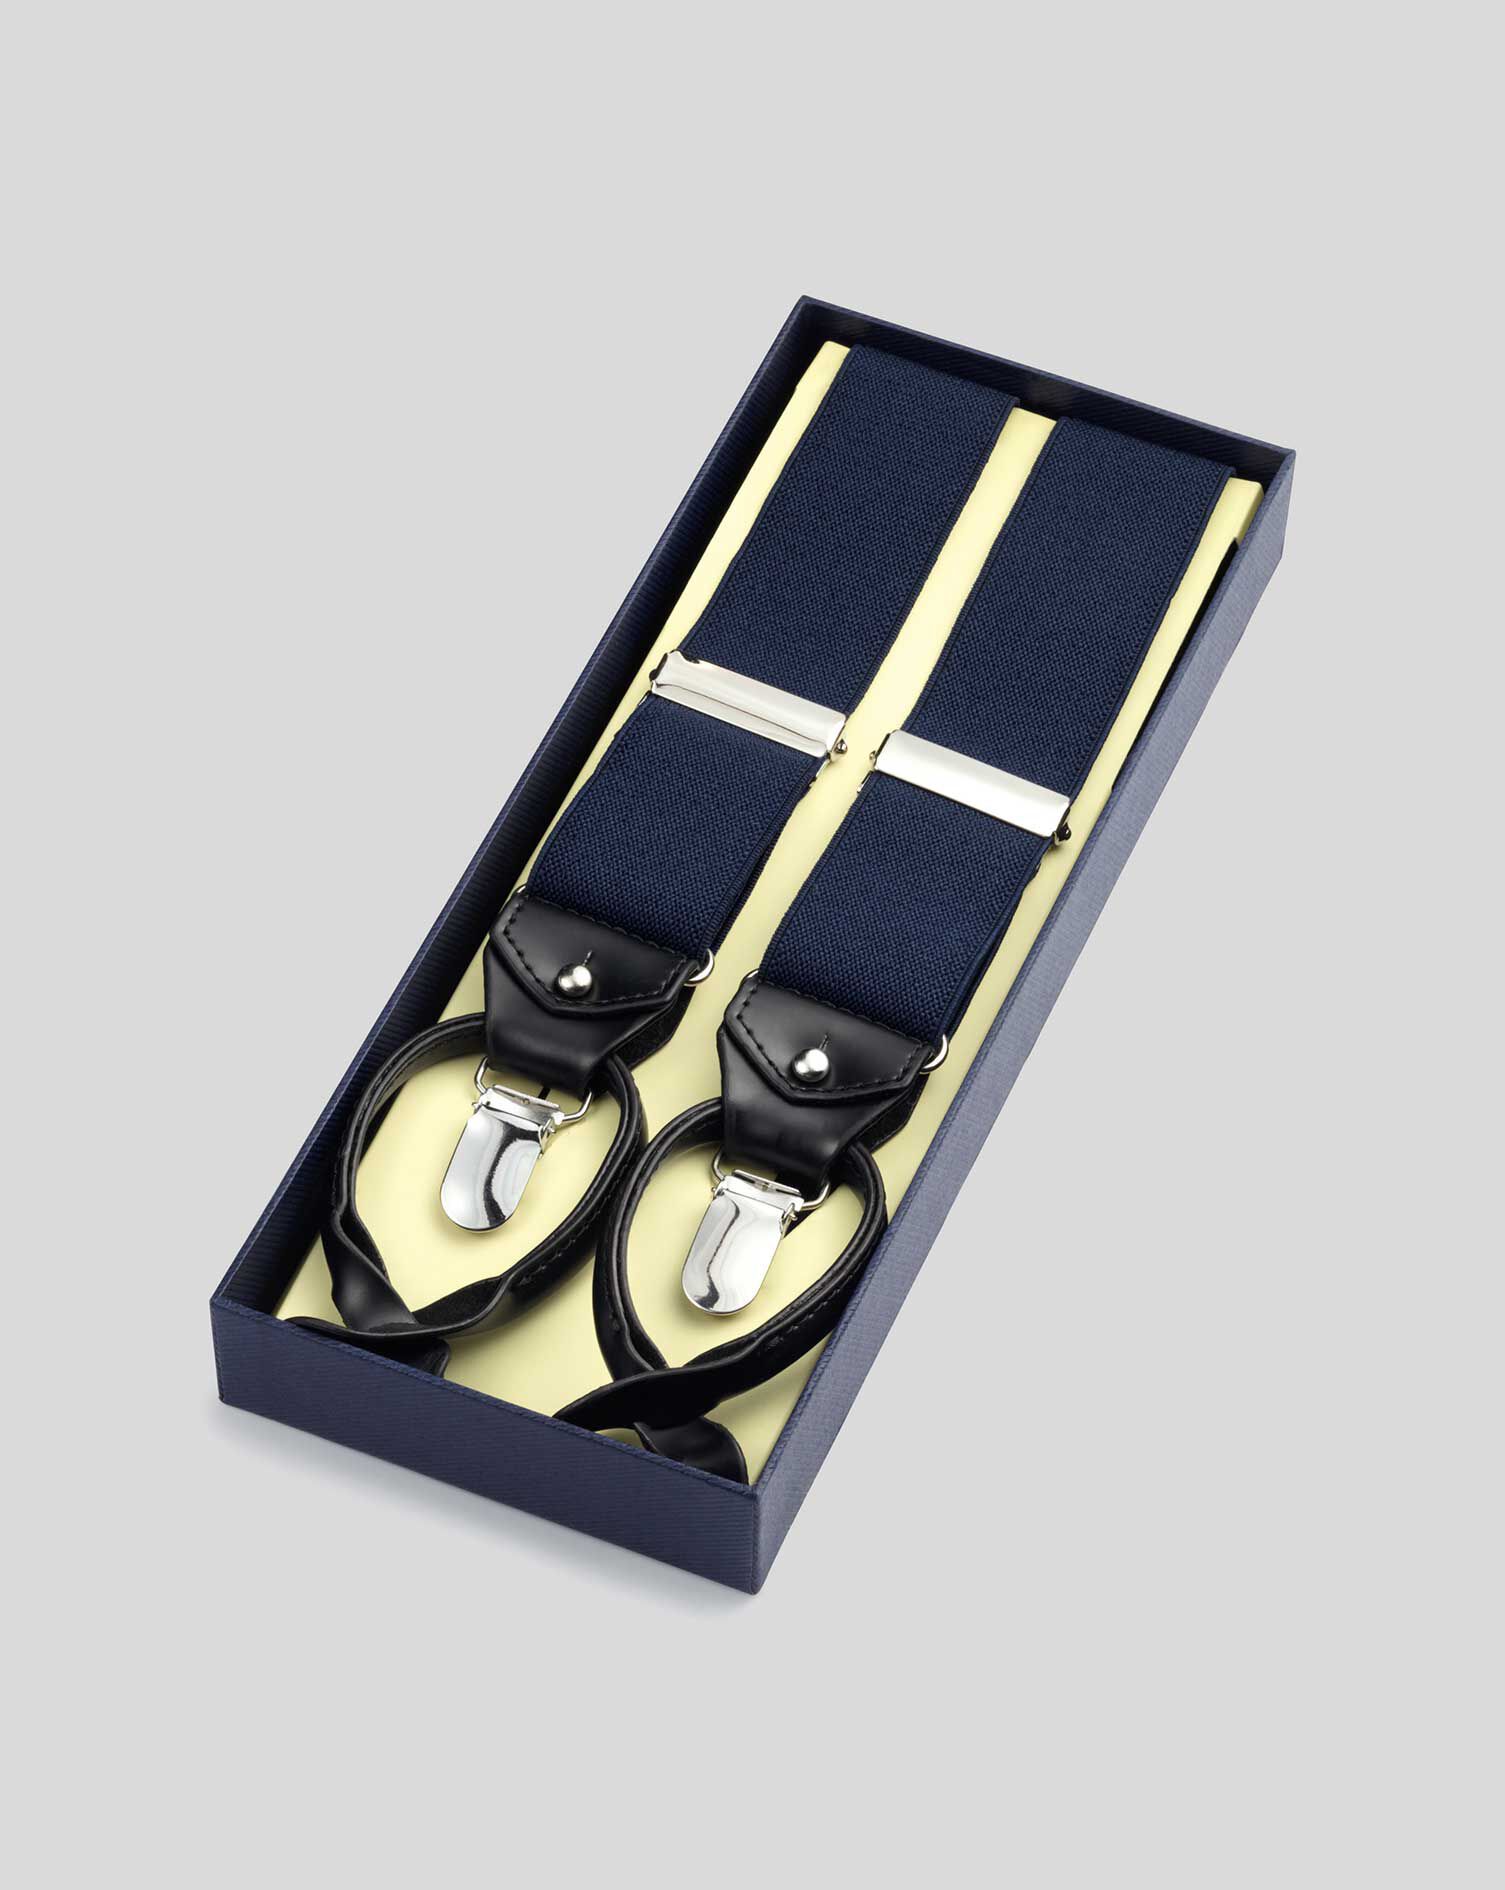 Accesorios Cinturones y tirantes Tirantes Vintage London Styled Hy-Bak Braces Suspenders Button End Gold Slider Kew Brown 